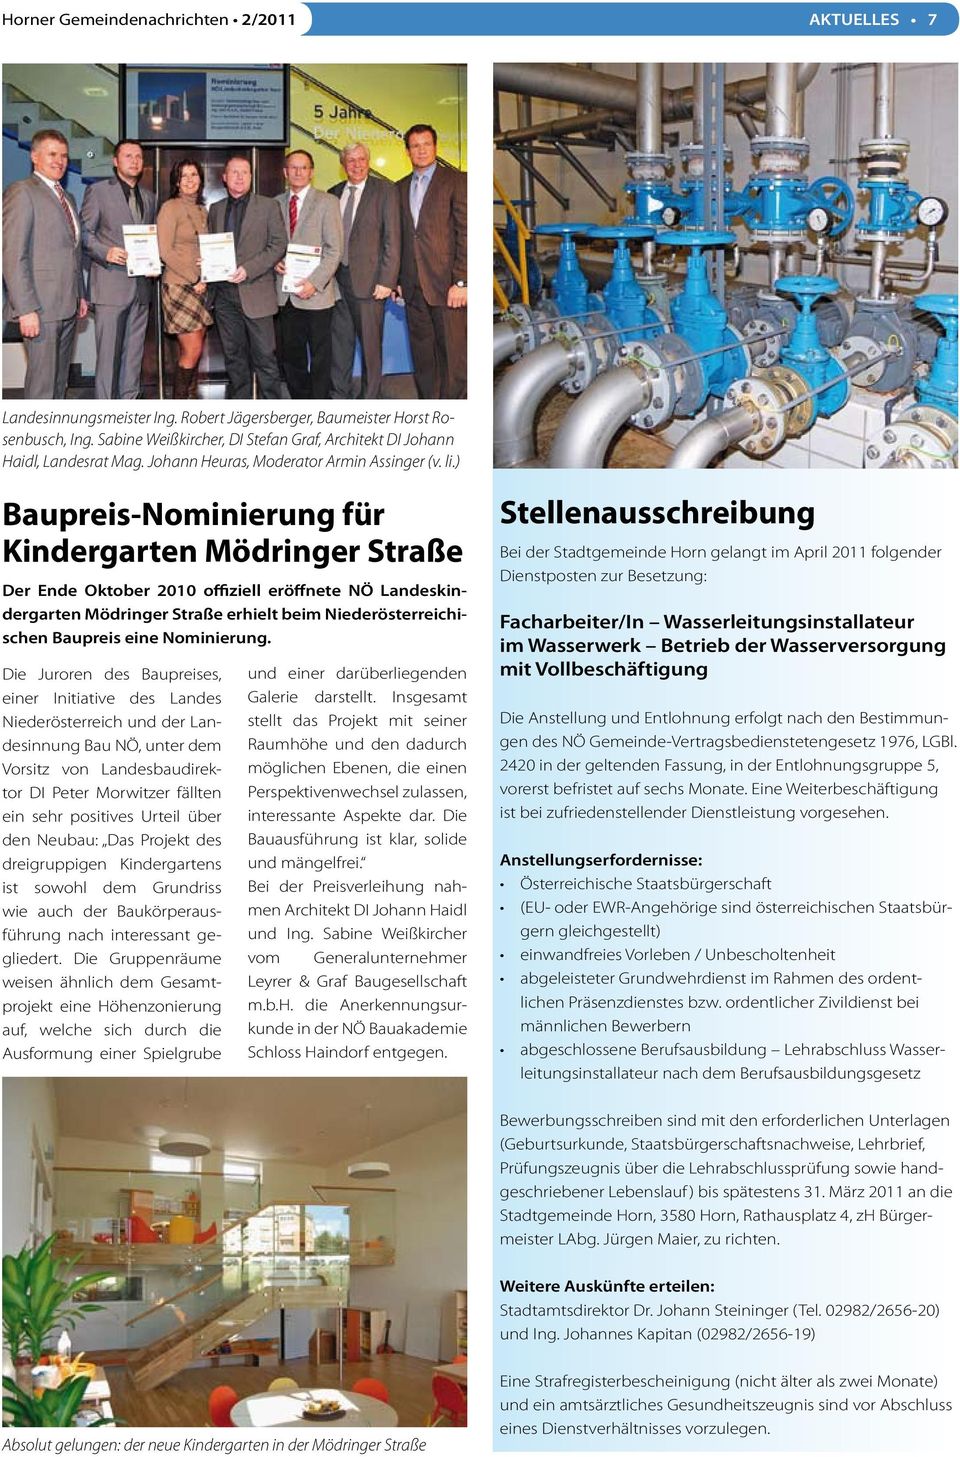 ) Baupreis-Nominierung für Kindergarten Mödringer Straße Der Ende Oktober 2010 offiziell eröffnete NÖ Landeskindergarten Mödringer Straße erhielt beim Niederösterreichischen Baupreis eine Nominierung.